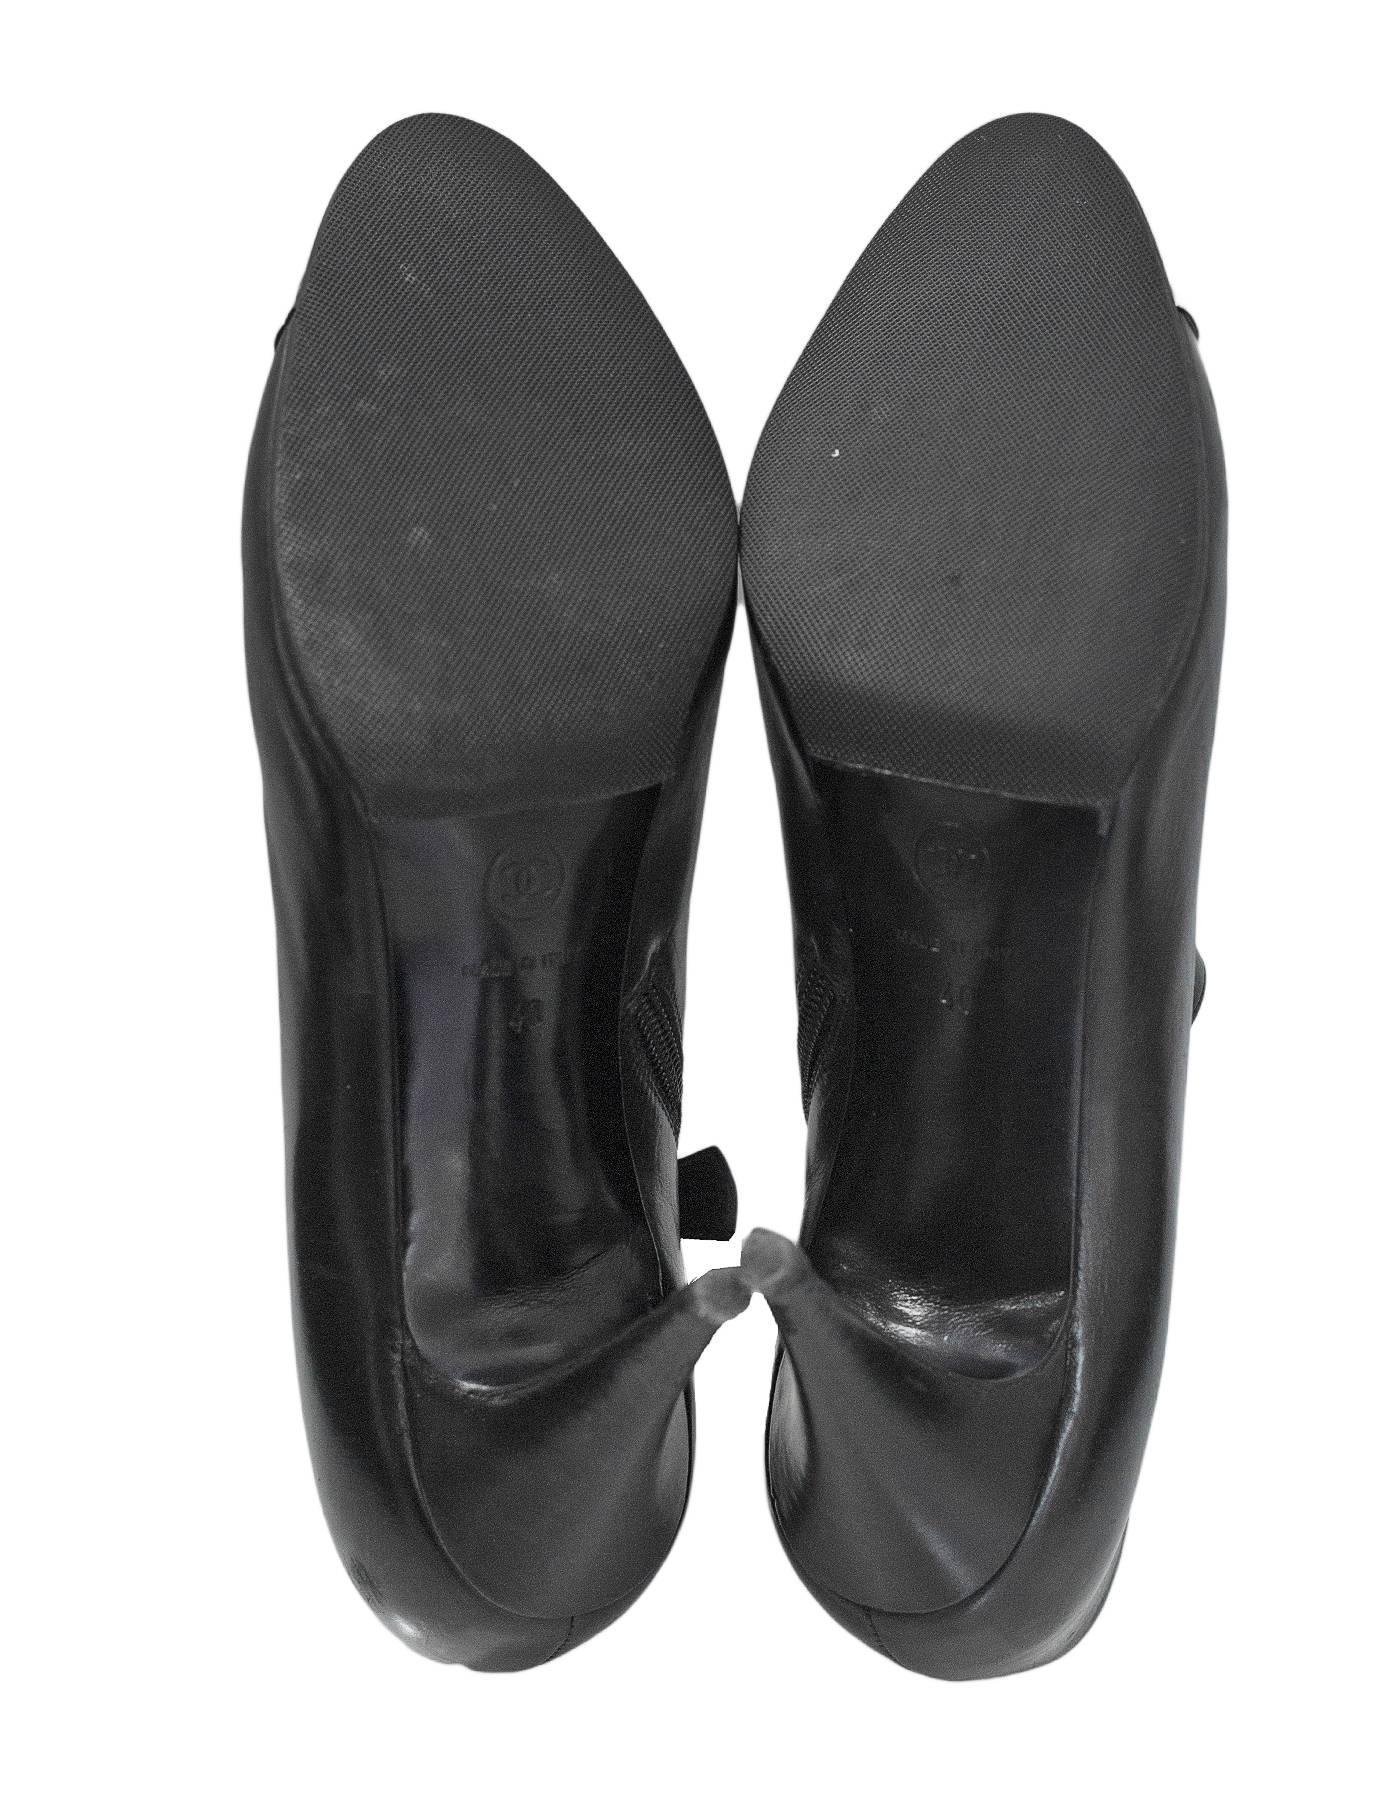 ballet flats cap toe open toe boots